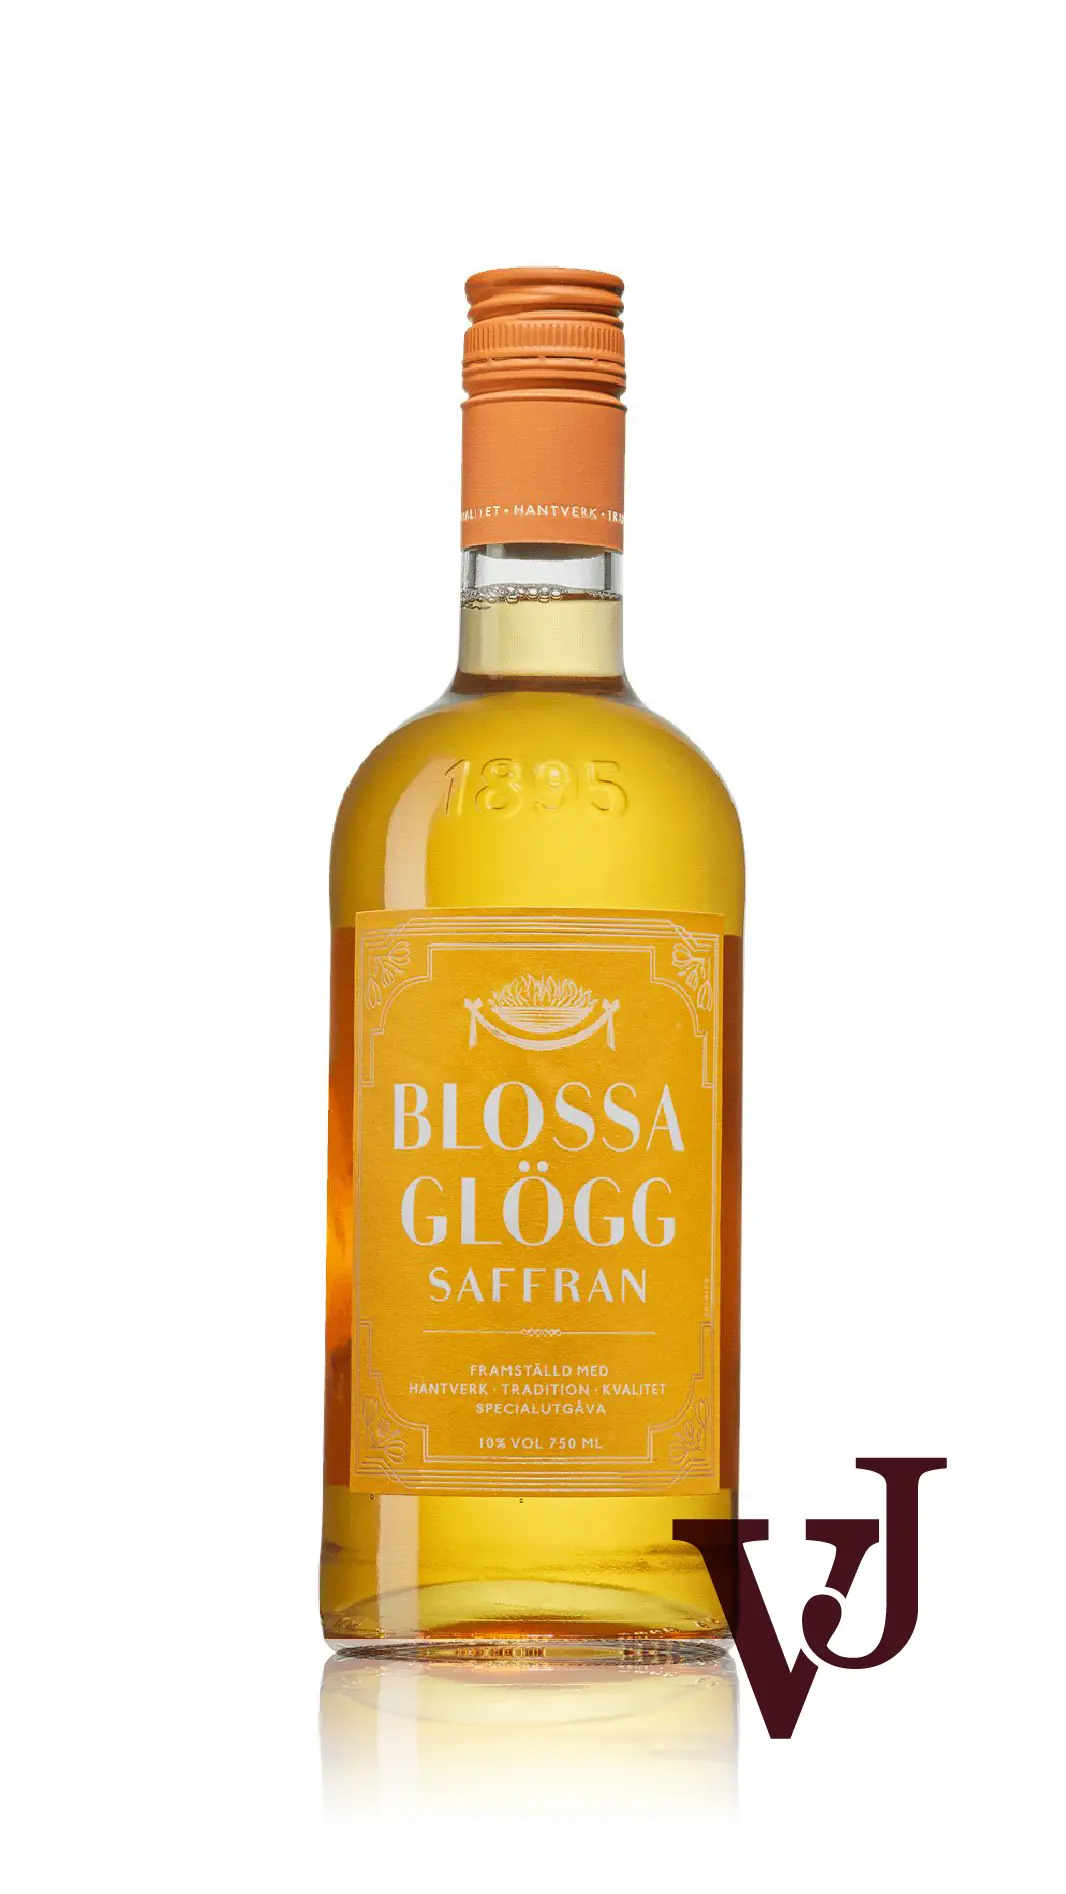 Övrigt vin - Blossa Glögg Saffran artikel nummer 9007801 från producenten Altia PLC från området Varumärketärinternationellt - Vinjournalen.se